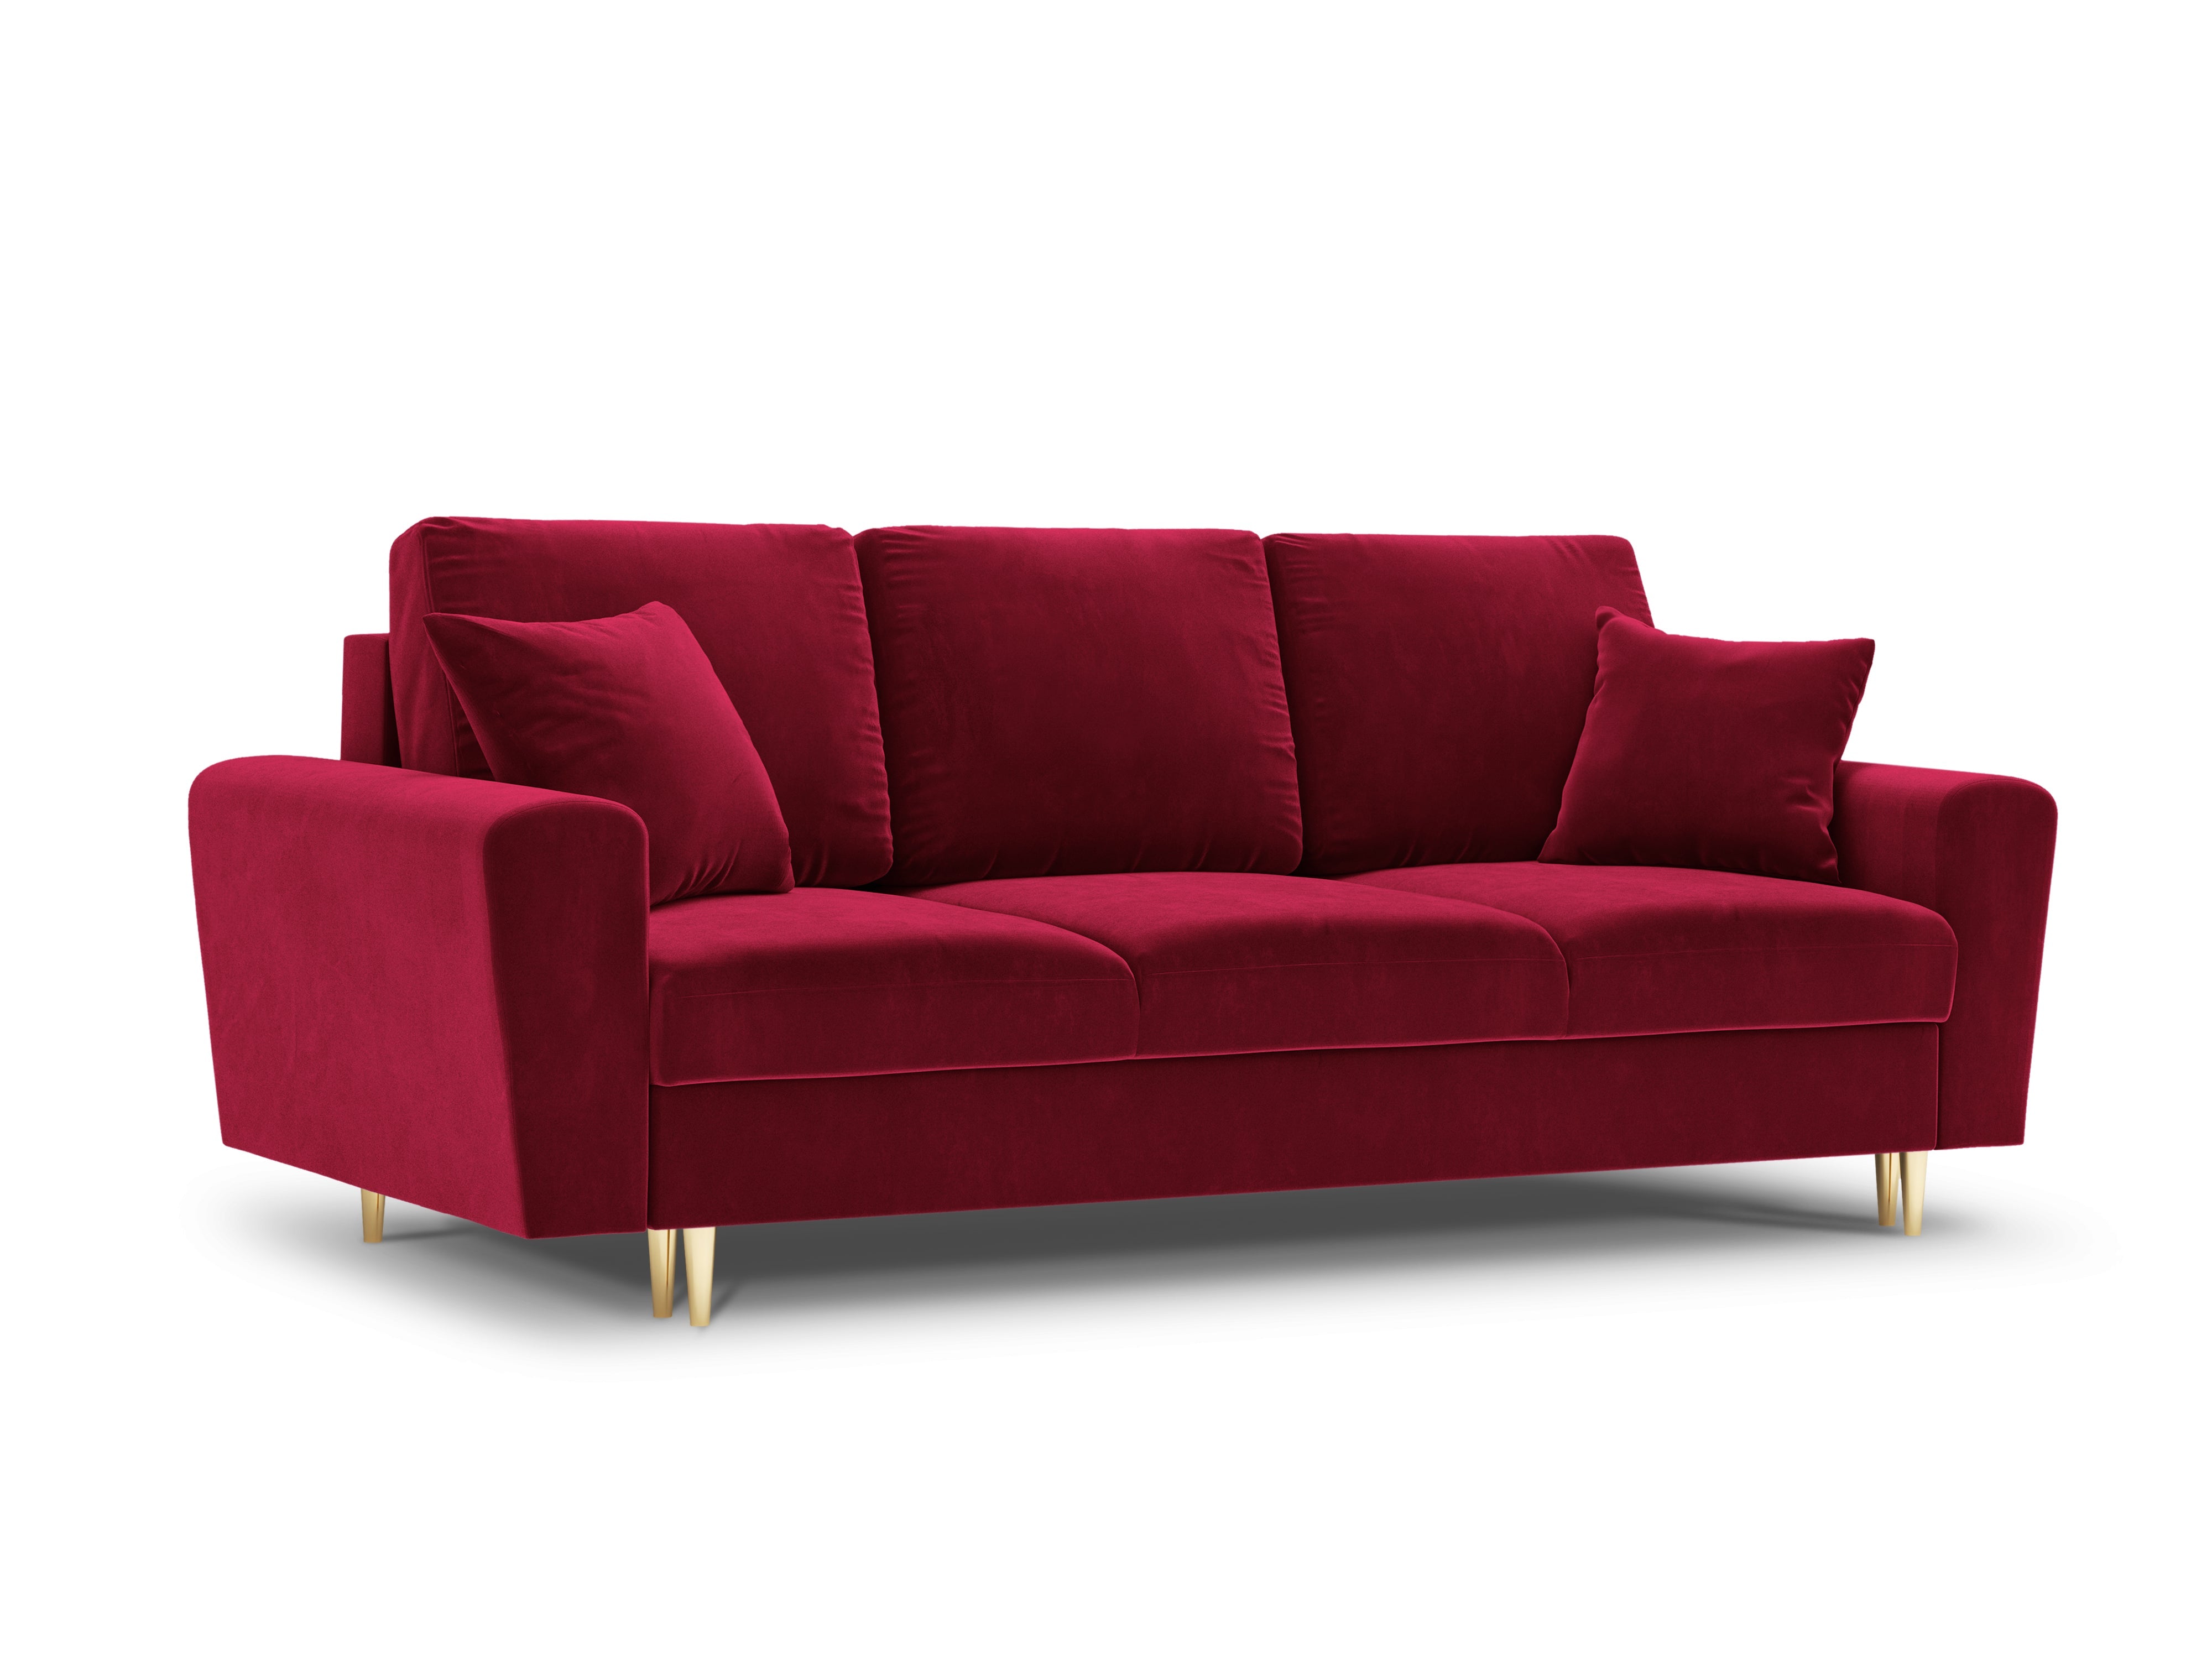 Moghan velvet red sofa